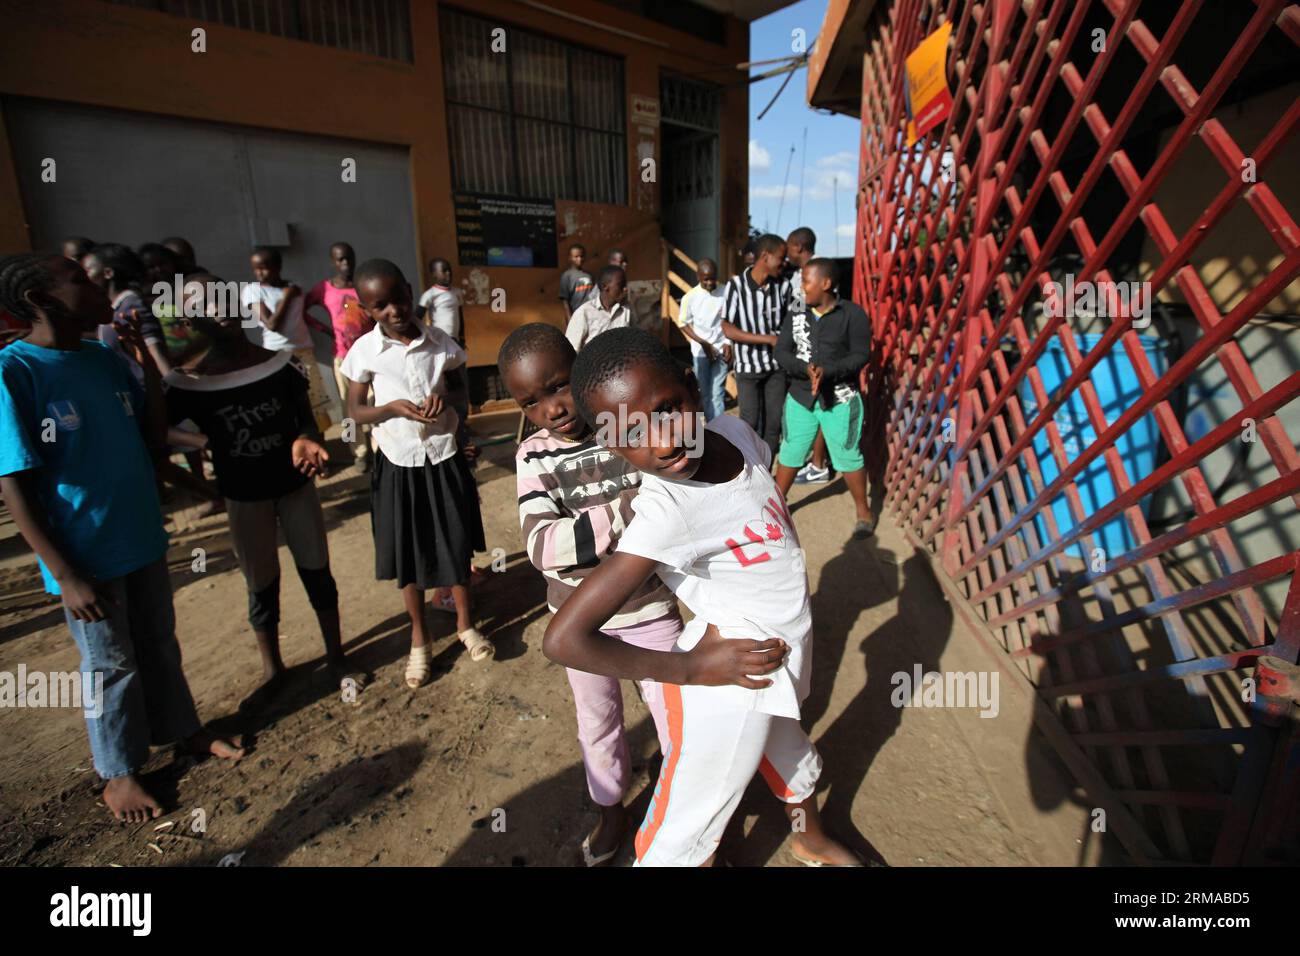 NAIROBI, 29. Juni 2014 -- Schüler posieren für Fotos vor einer Boxschule in Korogocho Slum, Nairobi, Hauptstadt von Kenia, 29. Juni 2014. Die Boxschule mit mehr als einem Hundred Schüler im Alter von 4 bis 20 Jahren wird von der NGO Fight for Peace gegründet. Die Schule nutzt Boxen und Kampfkunst in Verbindung mit Bildung, um das Potenzial junger Menschen zu nutzen und sie von Verbrechen und Gewalt fernzuhalten. Derzeit gibt es Dutzende solcher Boxschulen in den Slums von Nairobi, die von verschiedenen Organisationen gegründet wurden. (Xinhua/Zhou Xiaoxiong) (dzl) KENIA-NAIROBI-SLUMS-BOXSCHULE PUBLICATIONxNOTxINxCHN Nairo Stockfoto